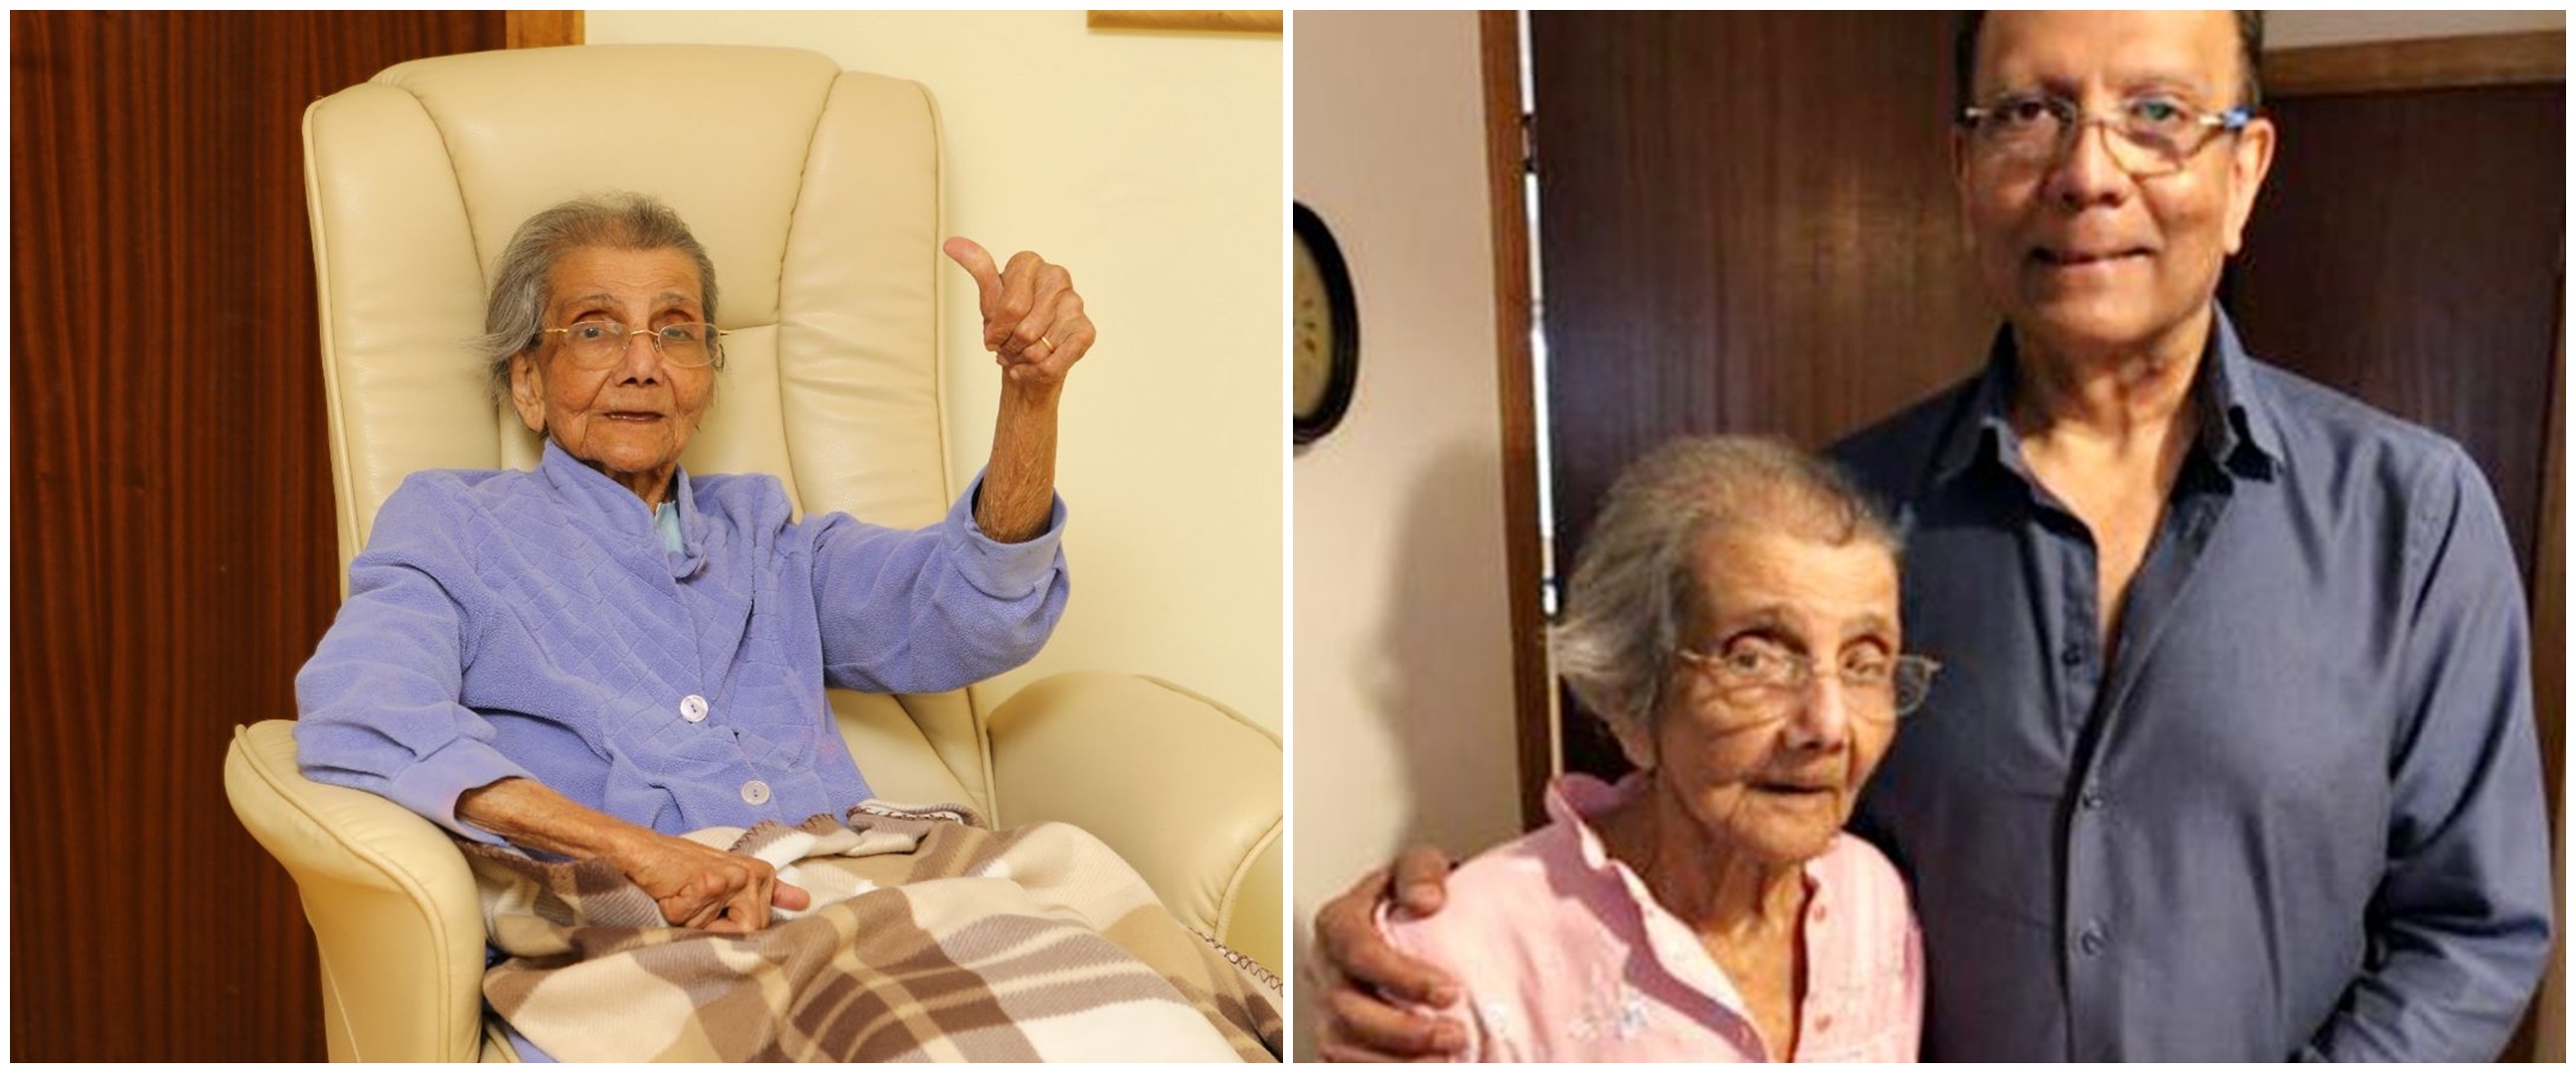 Kisah haru nenek 98 tahun yang sembuh dari virus corona